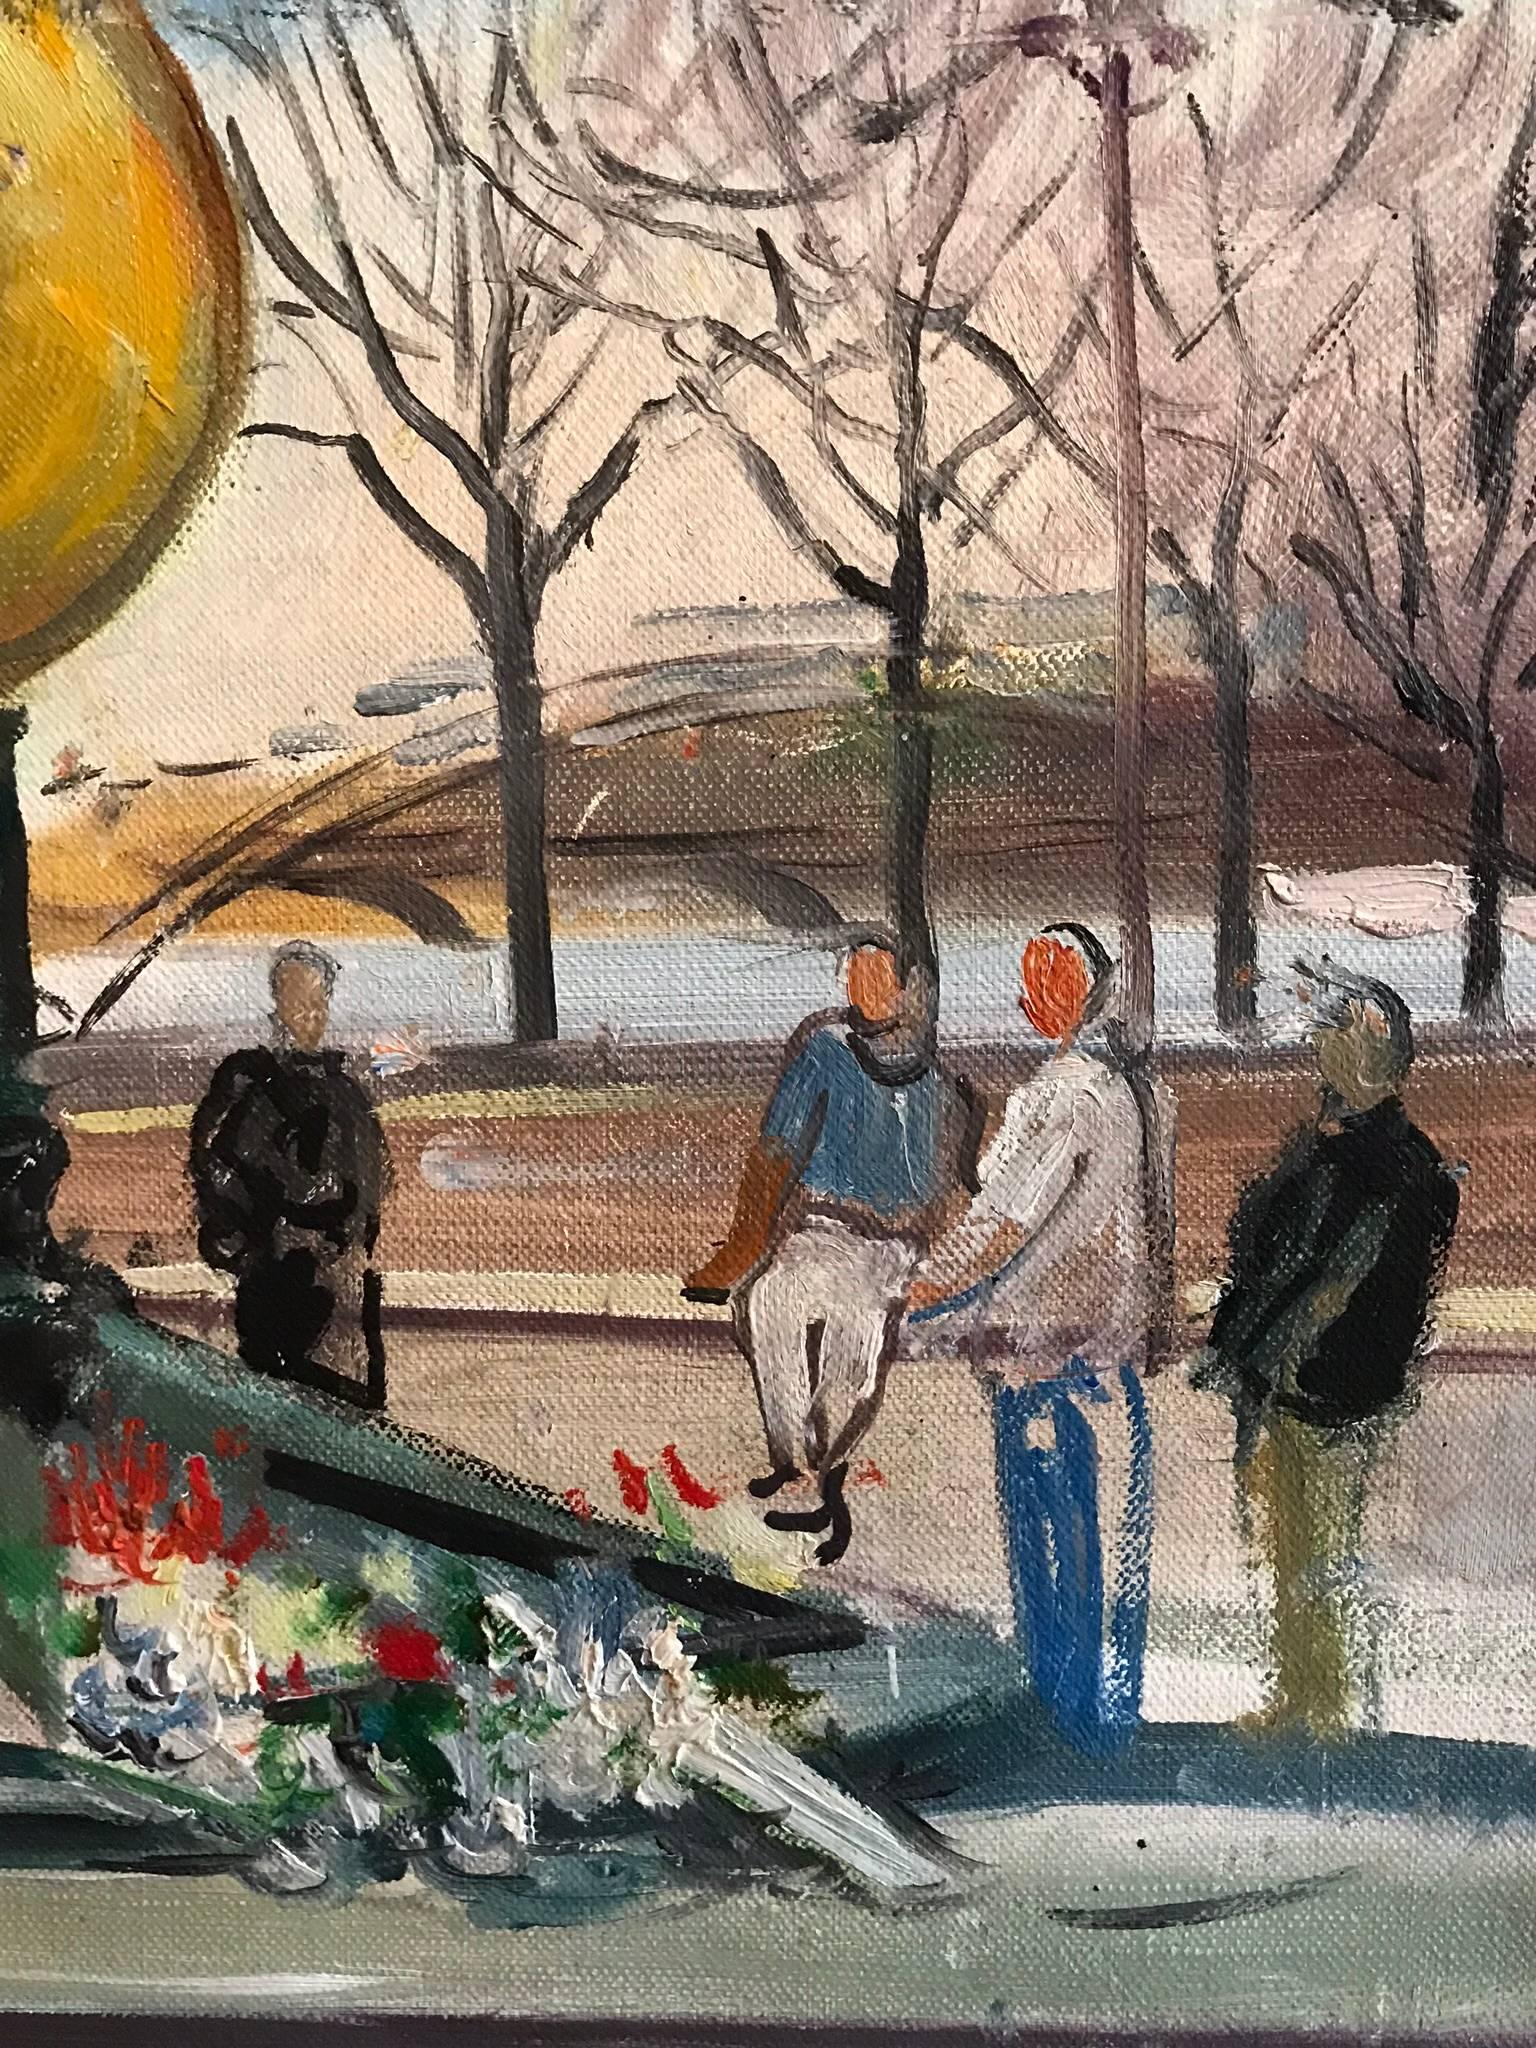 Flame of Liberty, Paris - Mémorial de la princesse Diana, peinture à l'huile signée 2